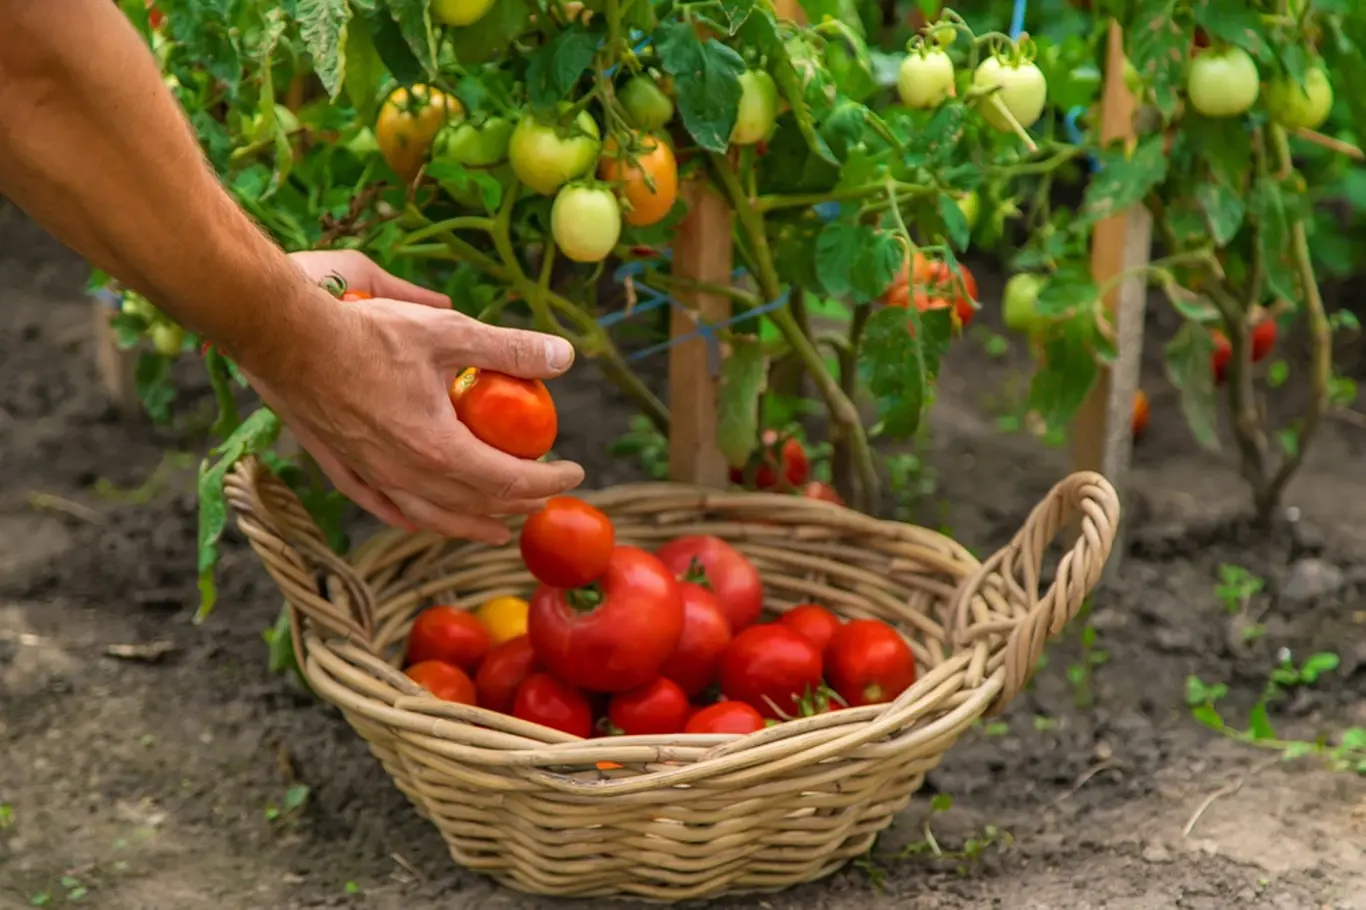 Víte, jak přimět rajčata, aby dozrála?